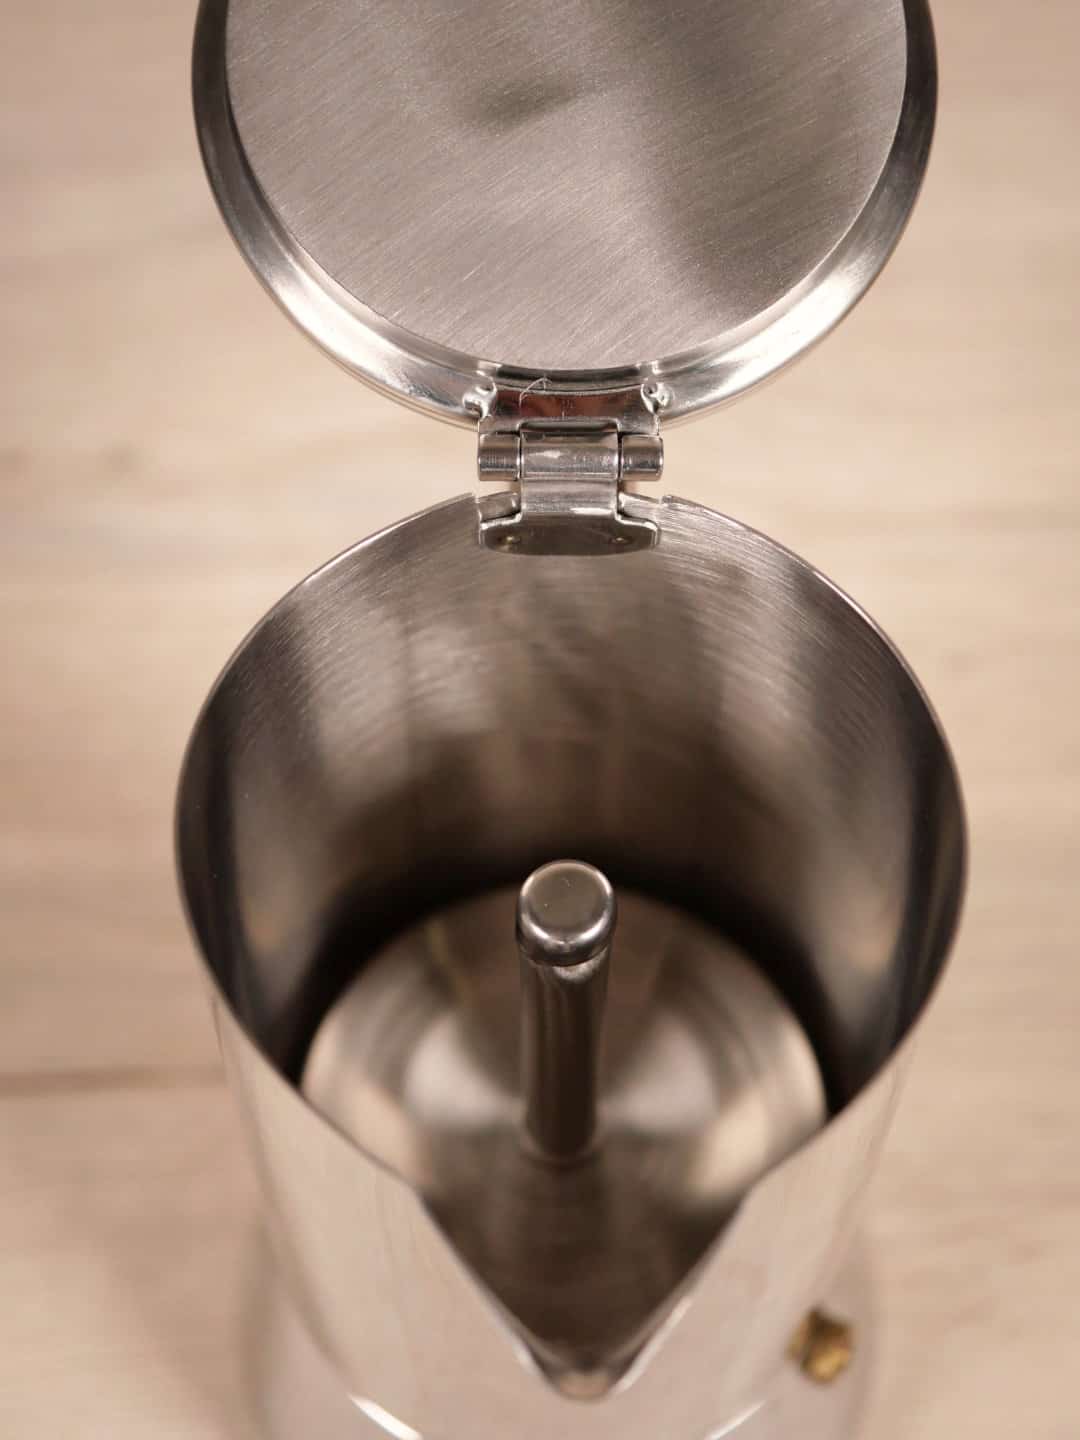 Espressokocher 4 Tassen - Nando - Silber - Kaffeezubereiter - Gefu